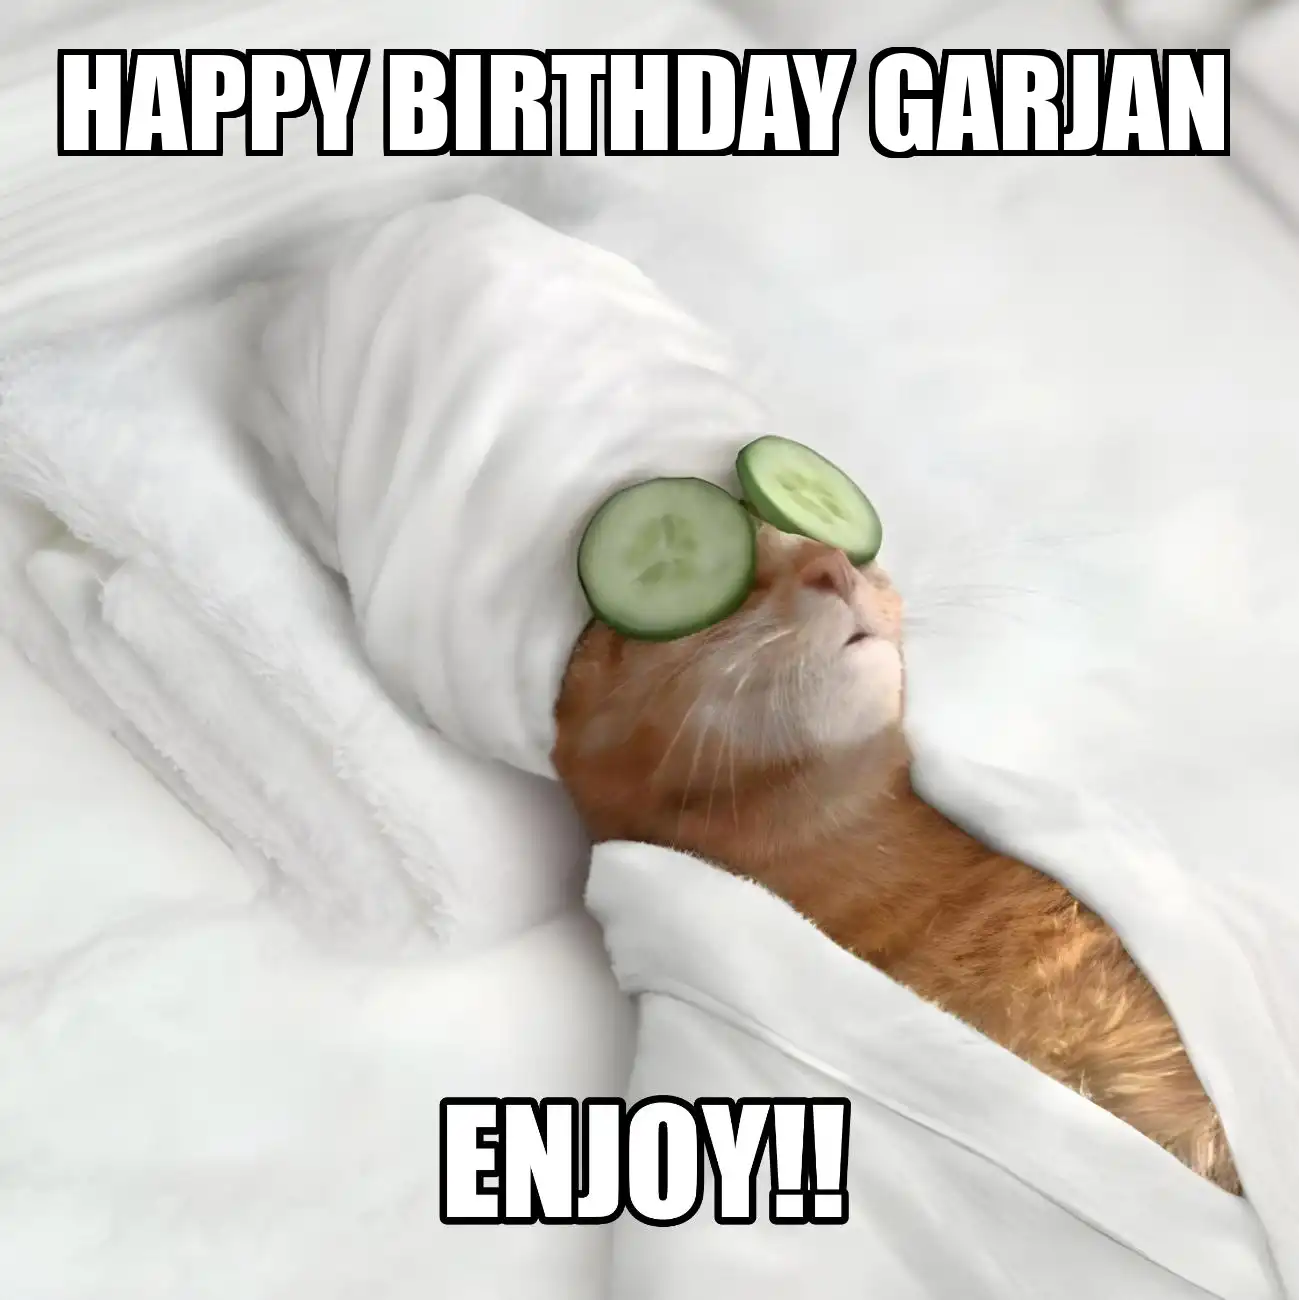 Happy Birthday Garjan Enjoy Cat Meme